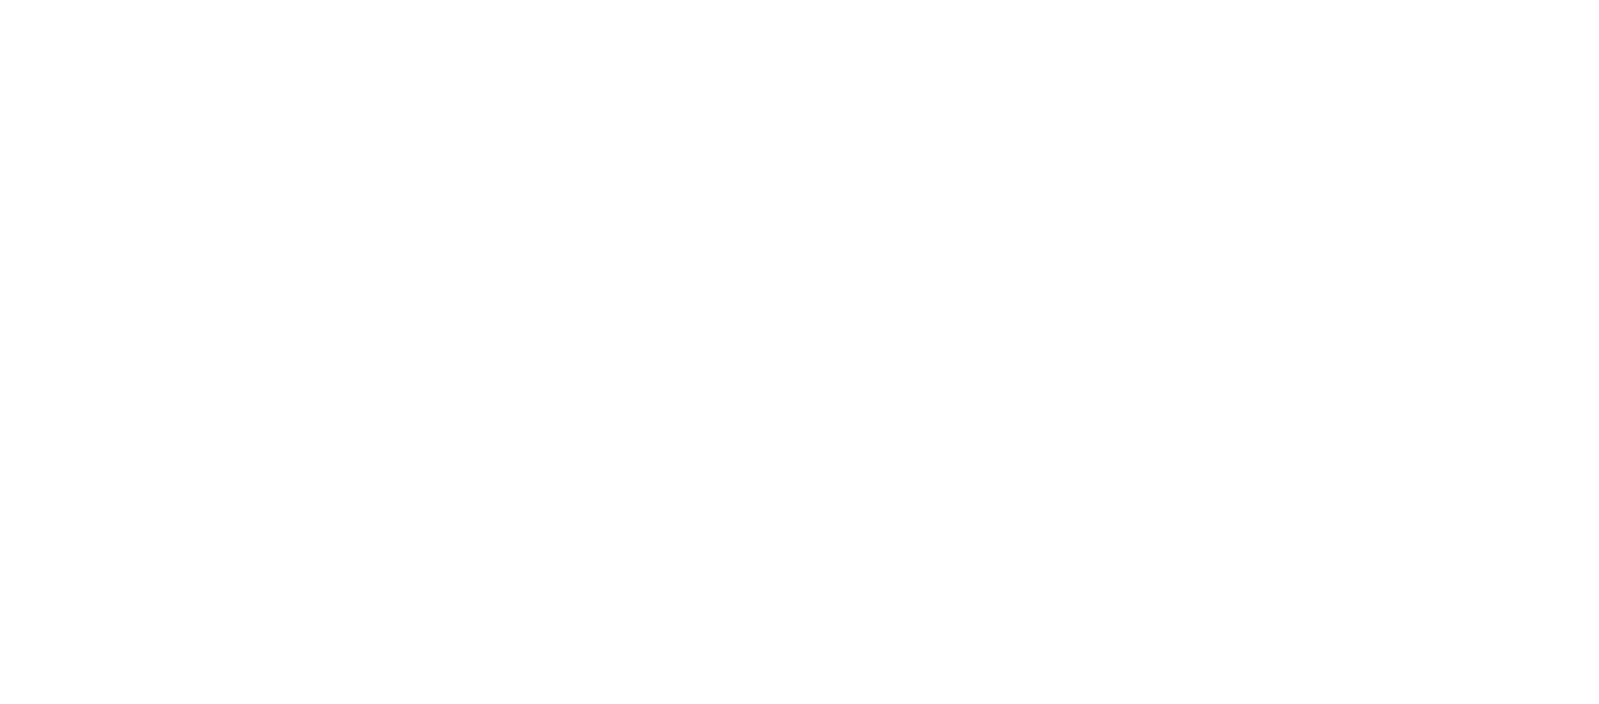 WonderPlanet logo for dark backgrounds (transparent PNG)